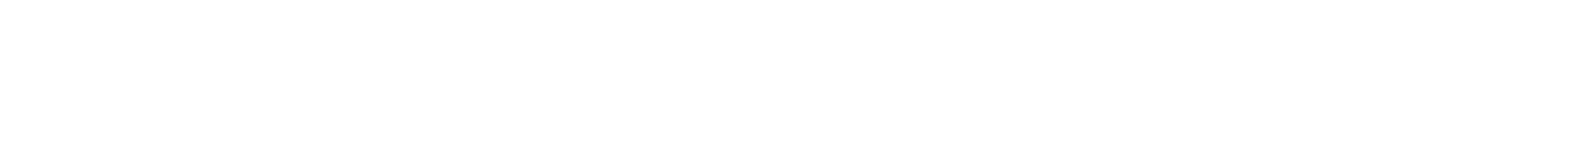 Giordano logo grand pour les fonds sombres (PNG transparent)